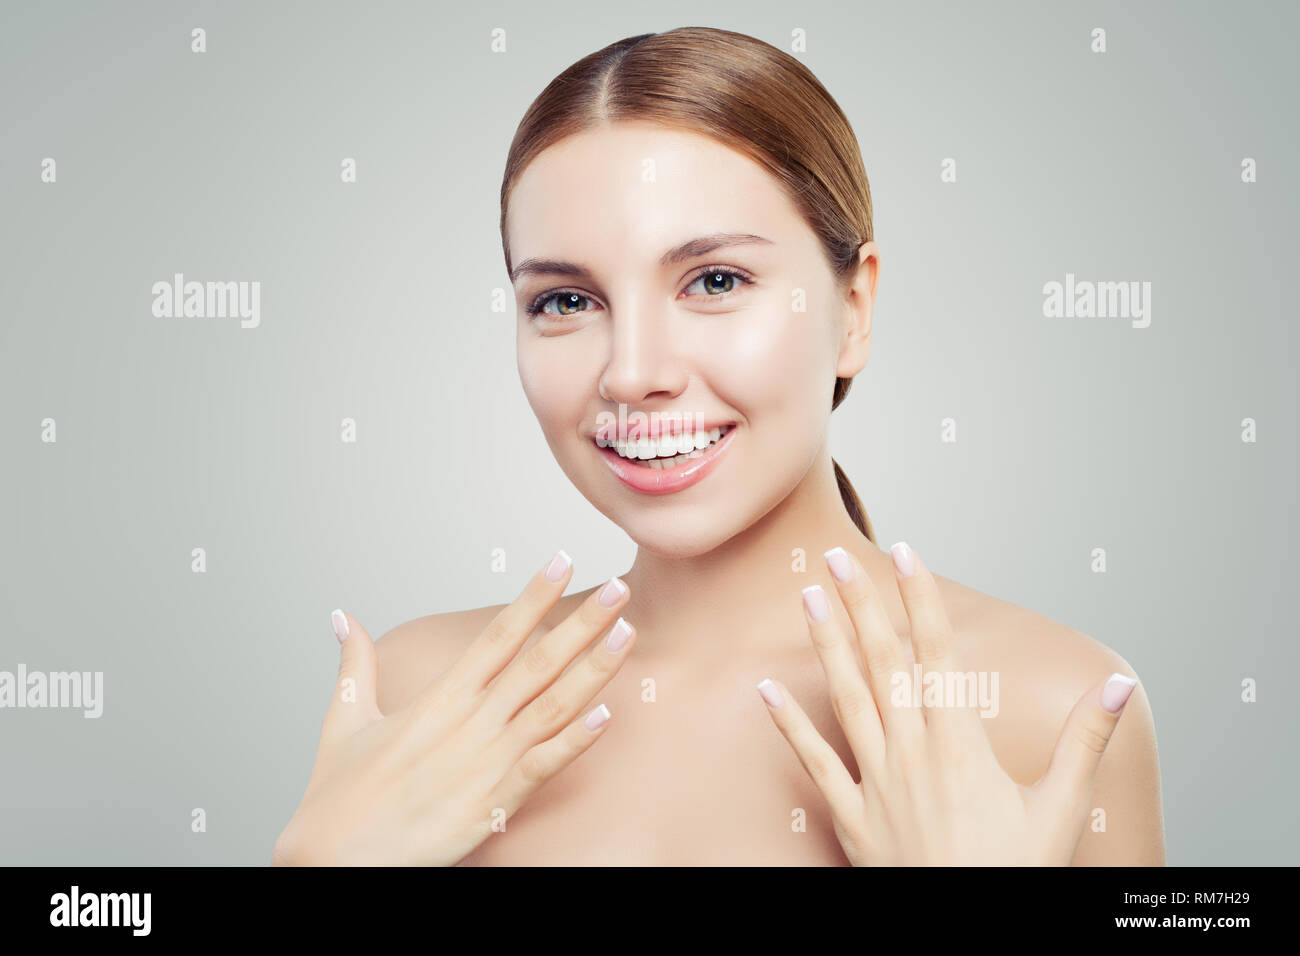 Femme excité avec une peau saine, sourire mignon et french manucure main. Concept de l'offre de cosmétologie Banque D'Images